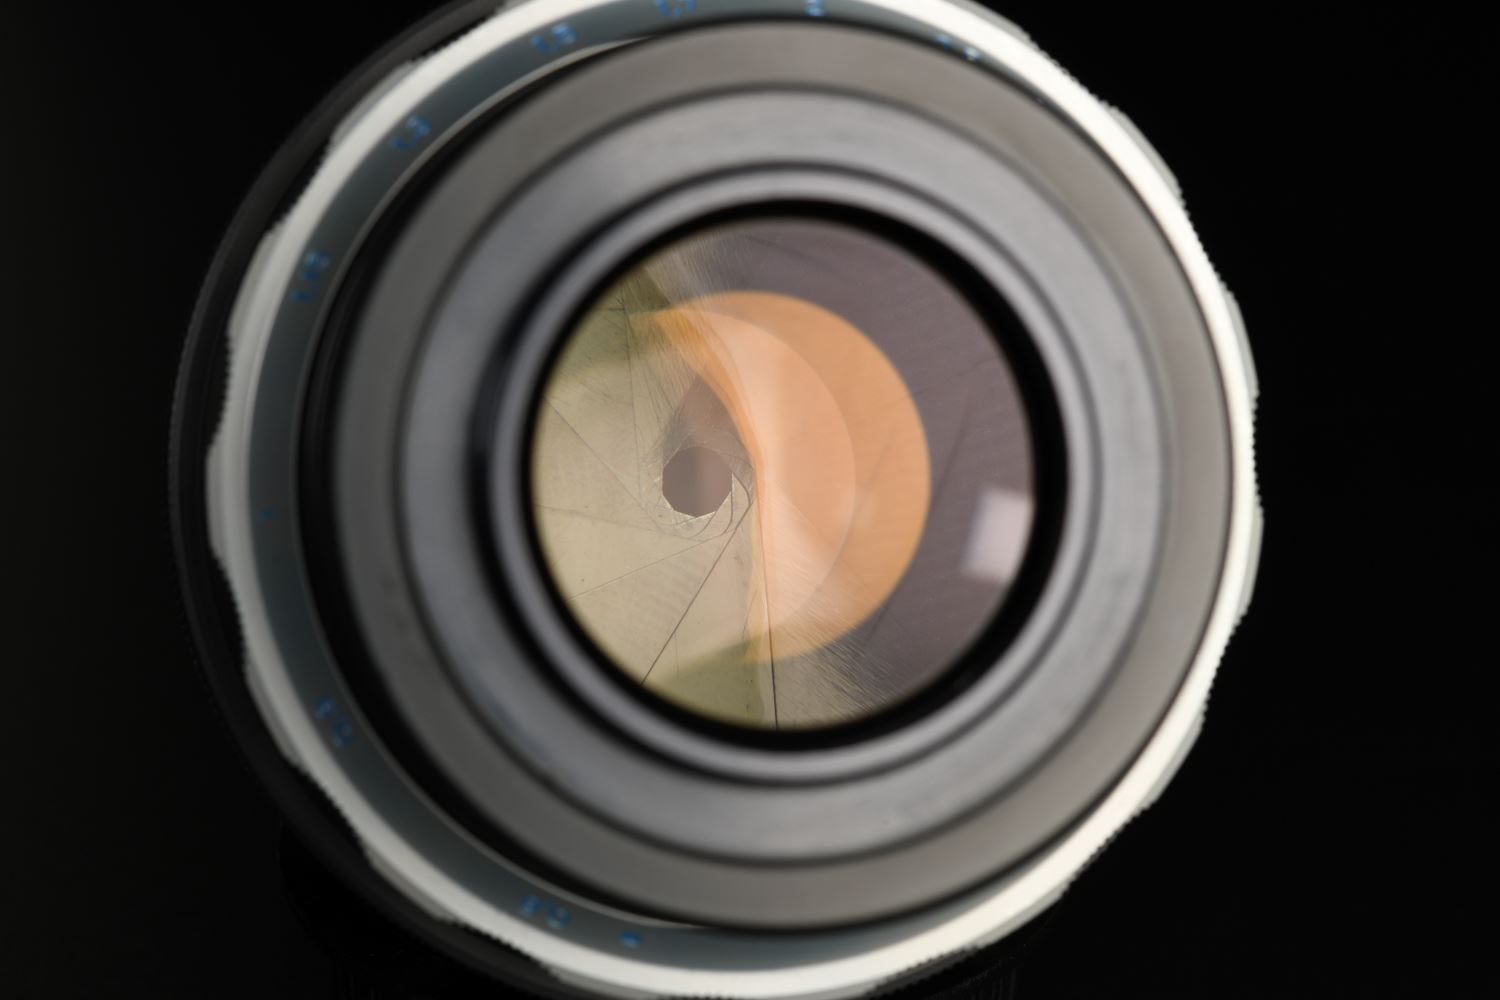 Picture of Meyer Optik Gorlitz Somnium 85mm f/1.5 M42